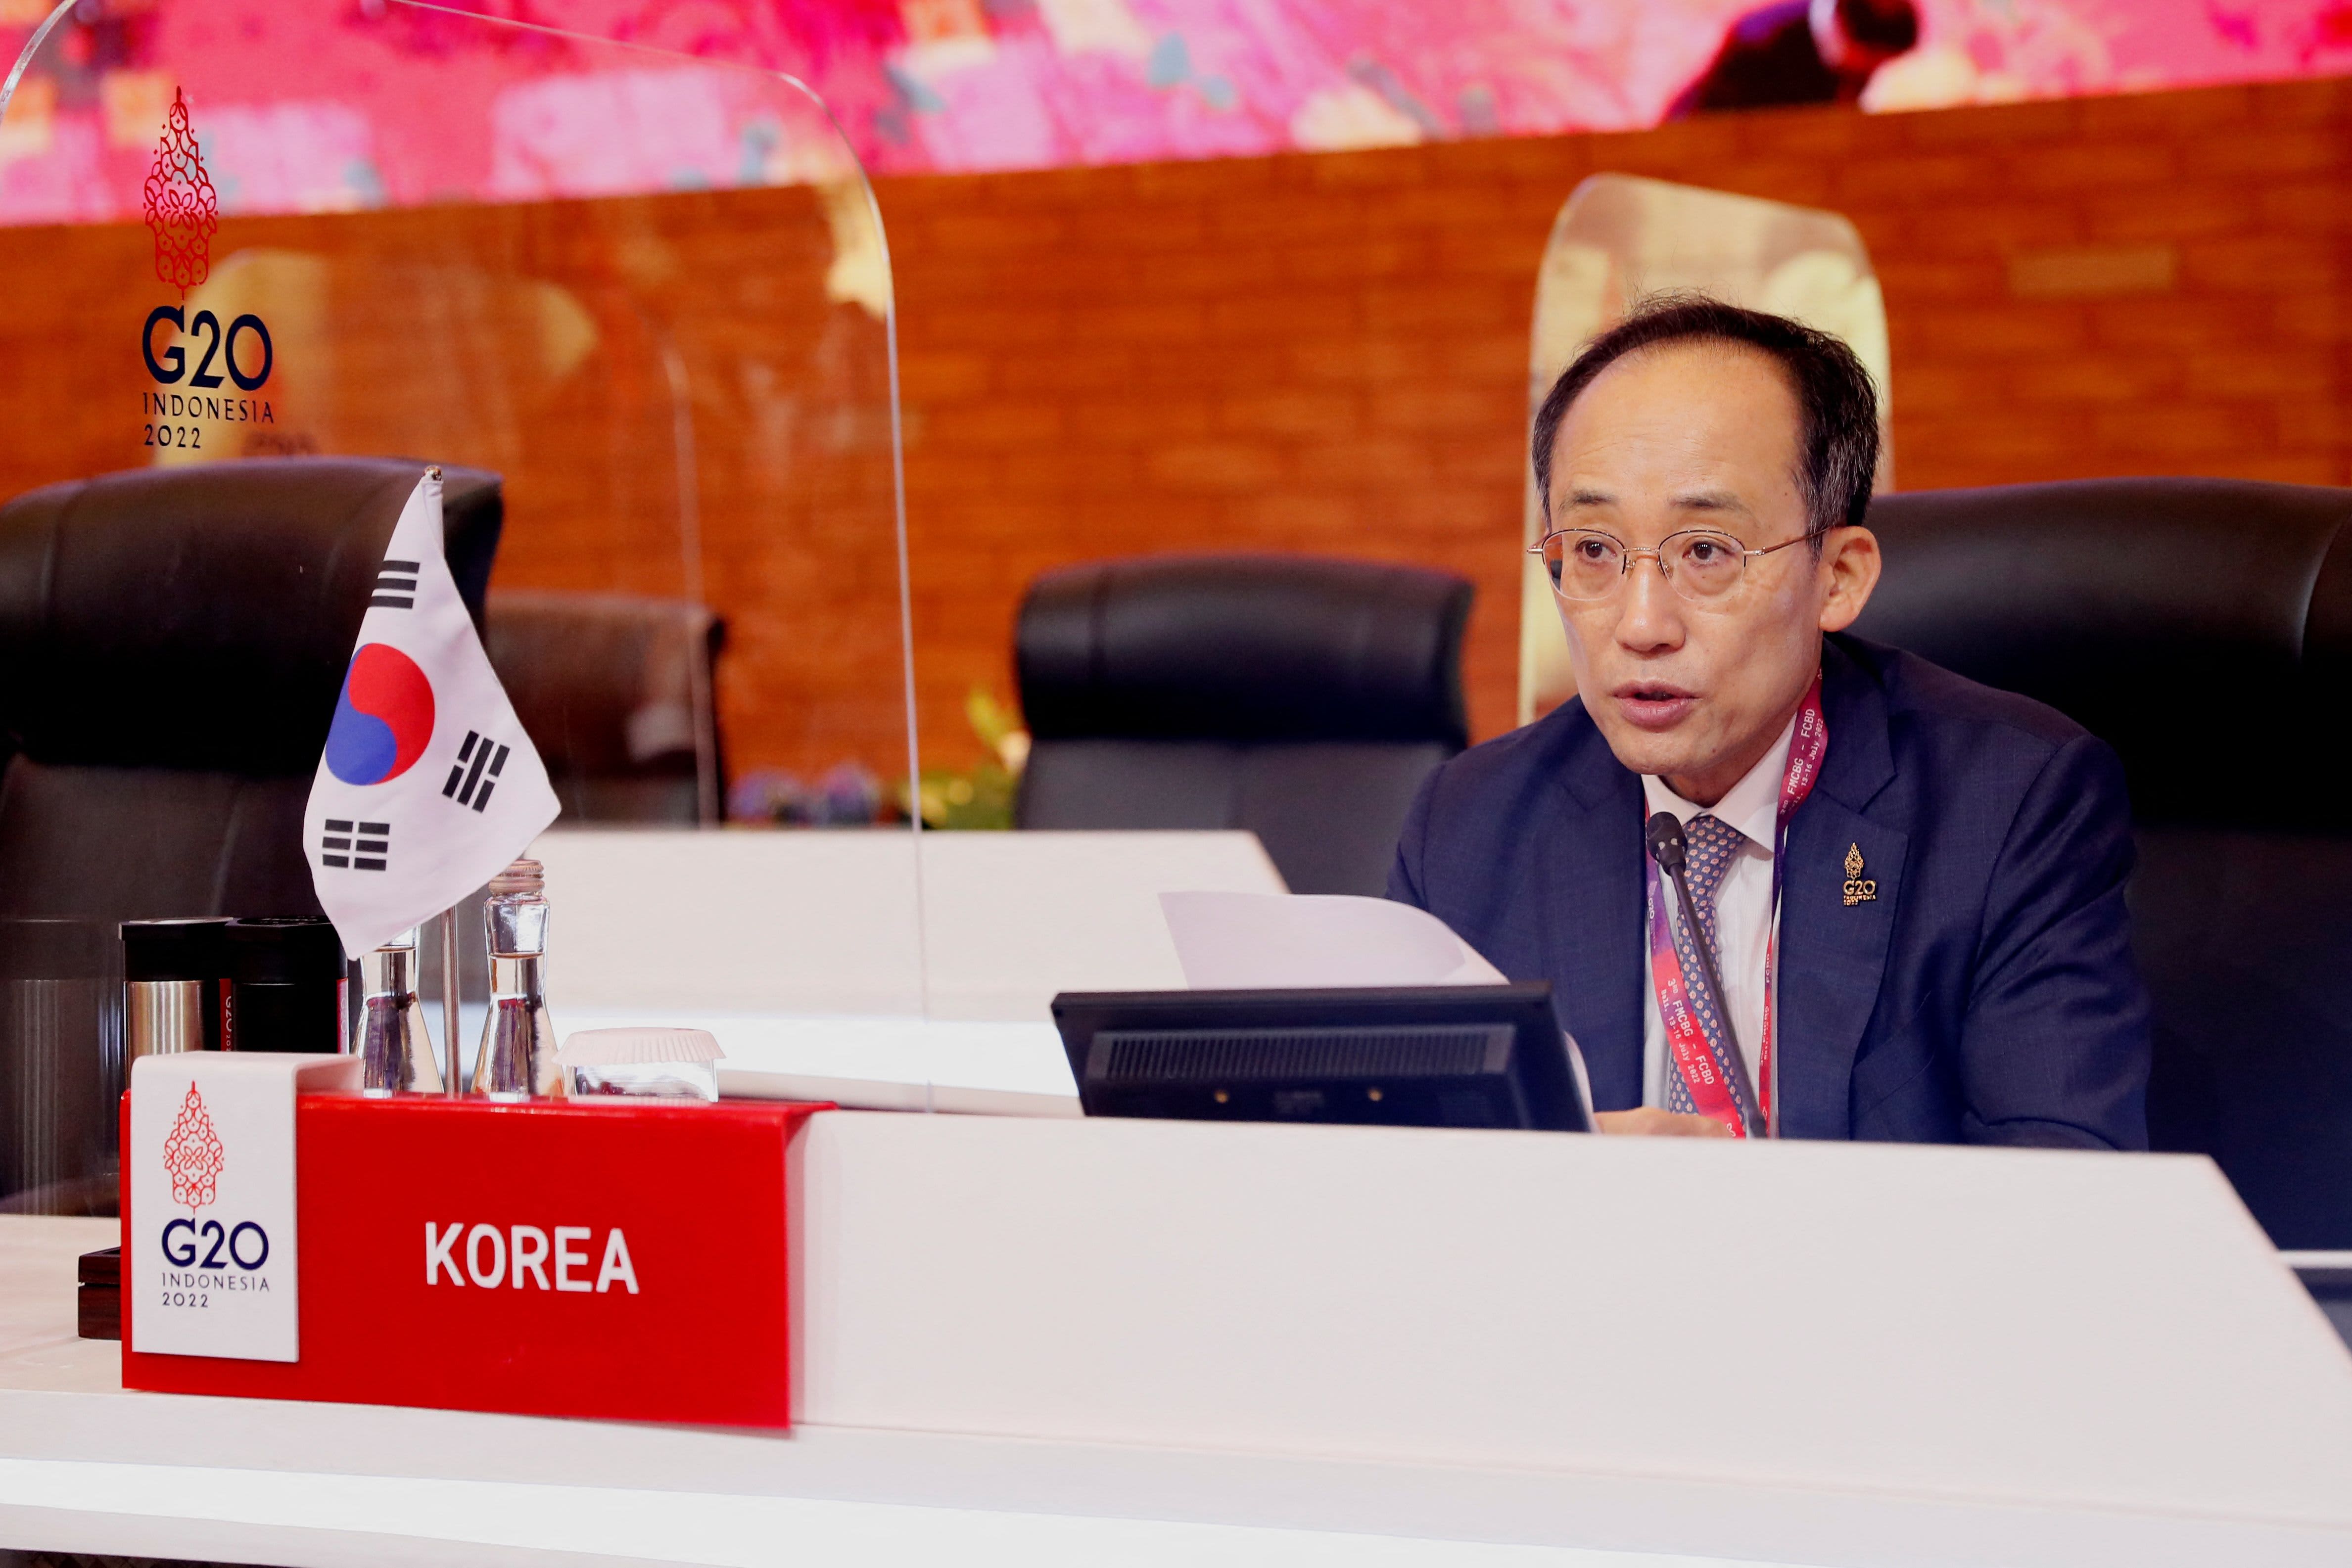 韓国の財務大臣は、韓国は日本との関係において「転換点」にあると述べています